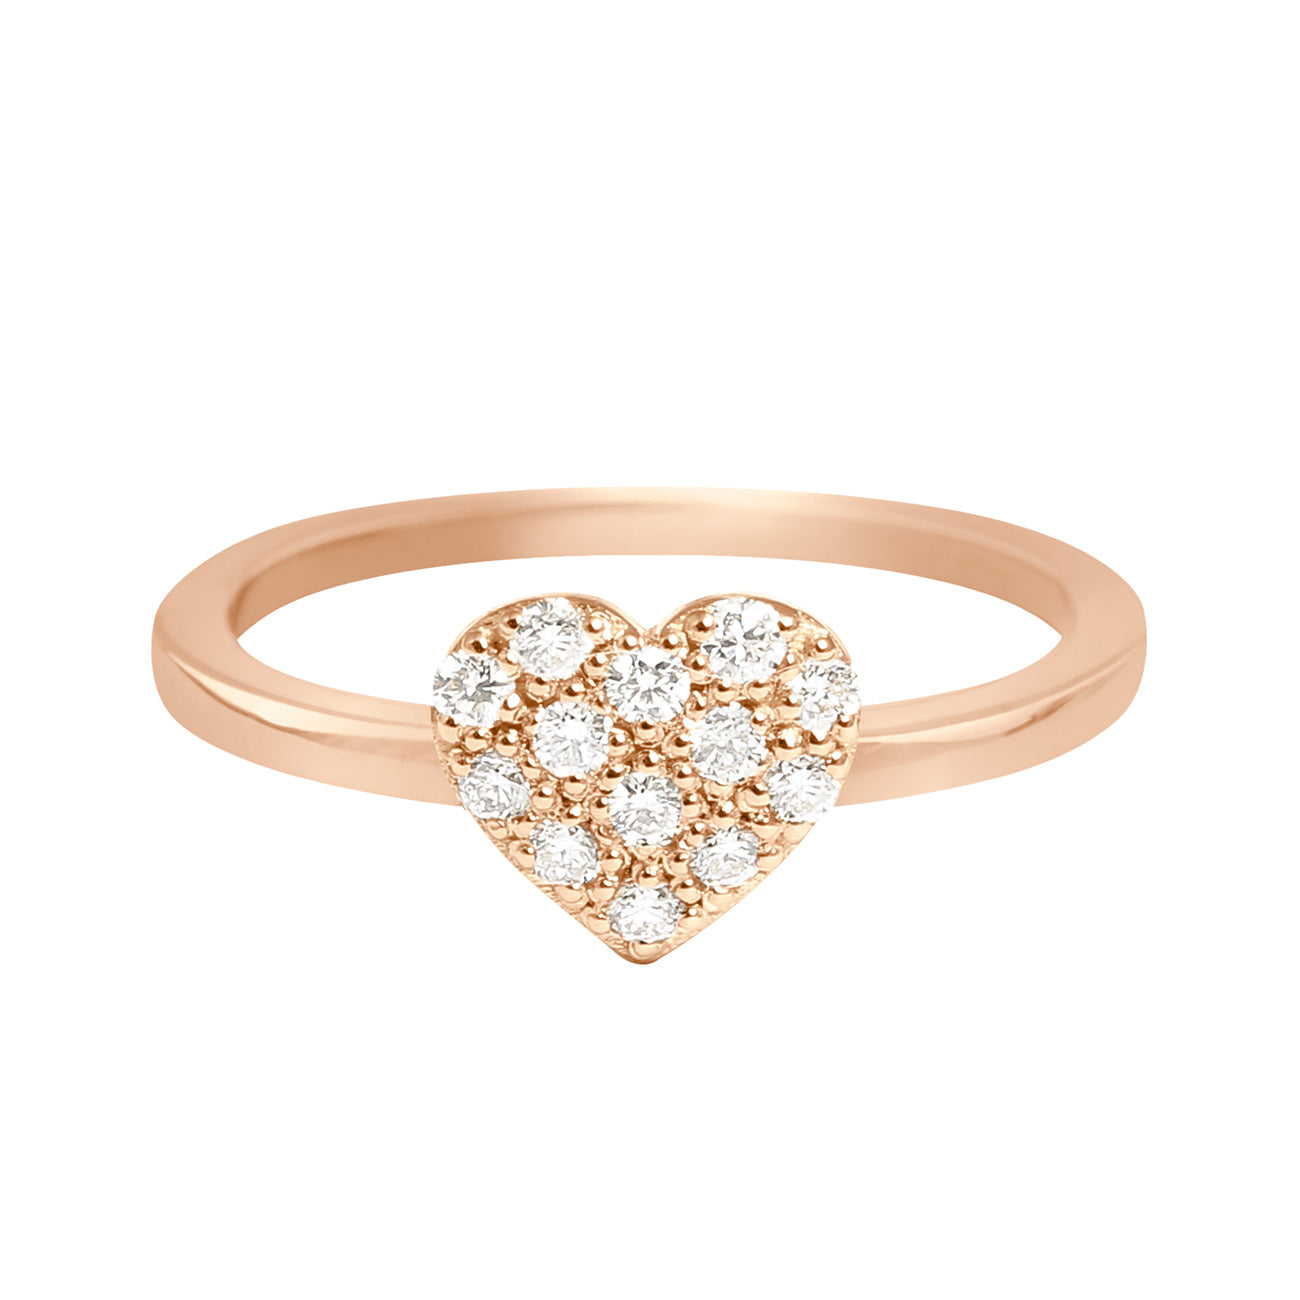 Gigi Clozeau - In Love Diamond Ring, Rose Gold, Size 6